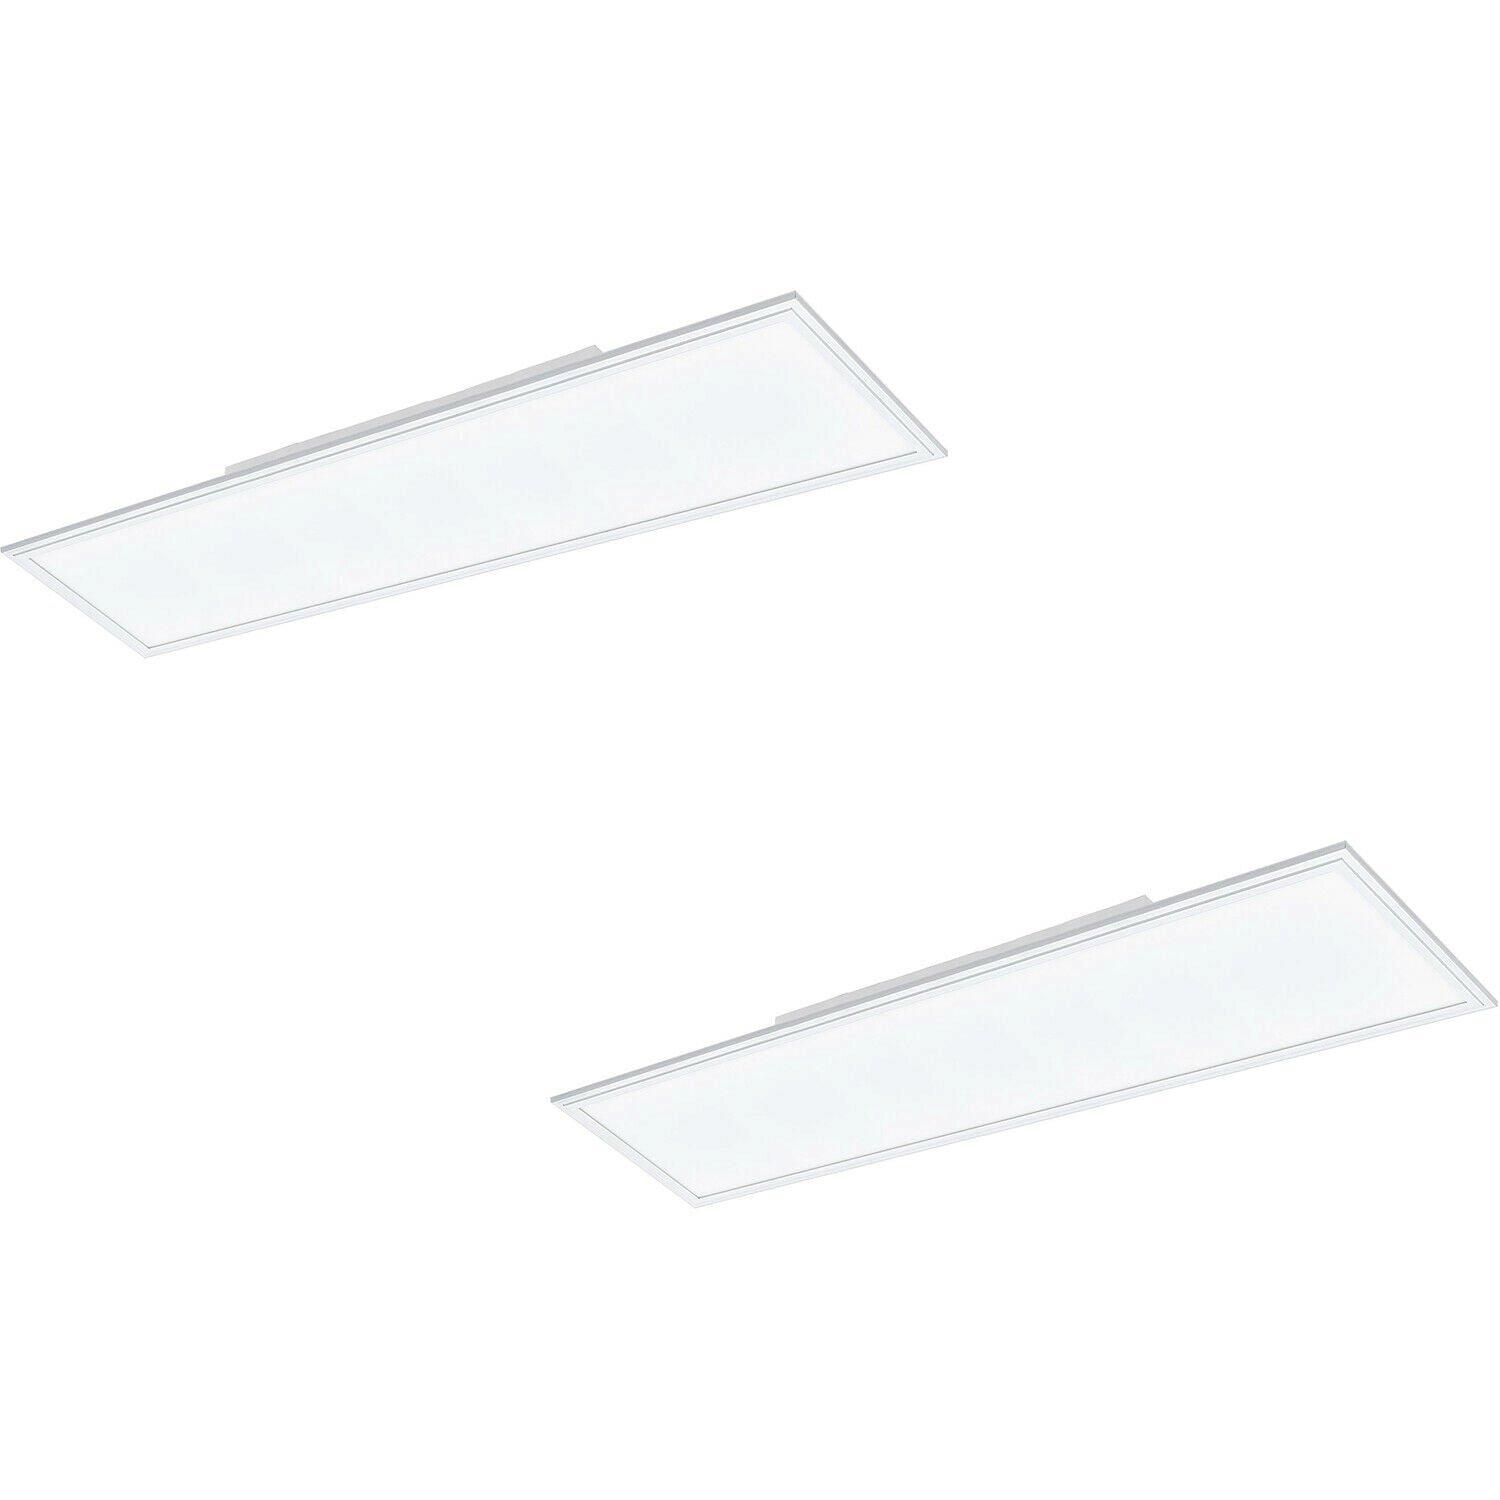 2 PACK Wall / Ceiling Light White 1195mm Slim Strip Panel 33W LED 4000K